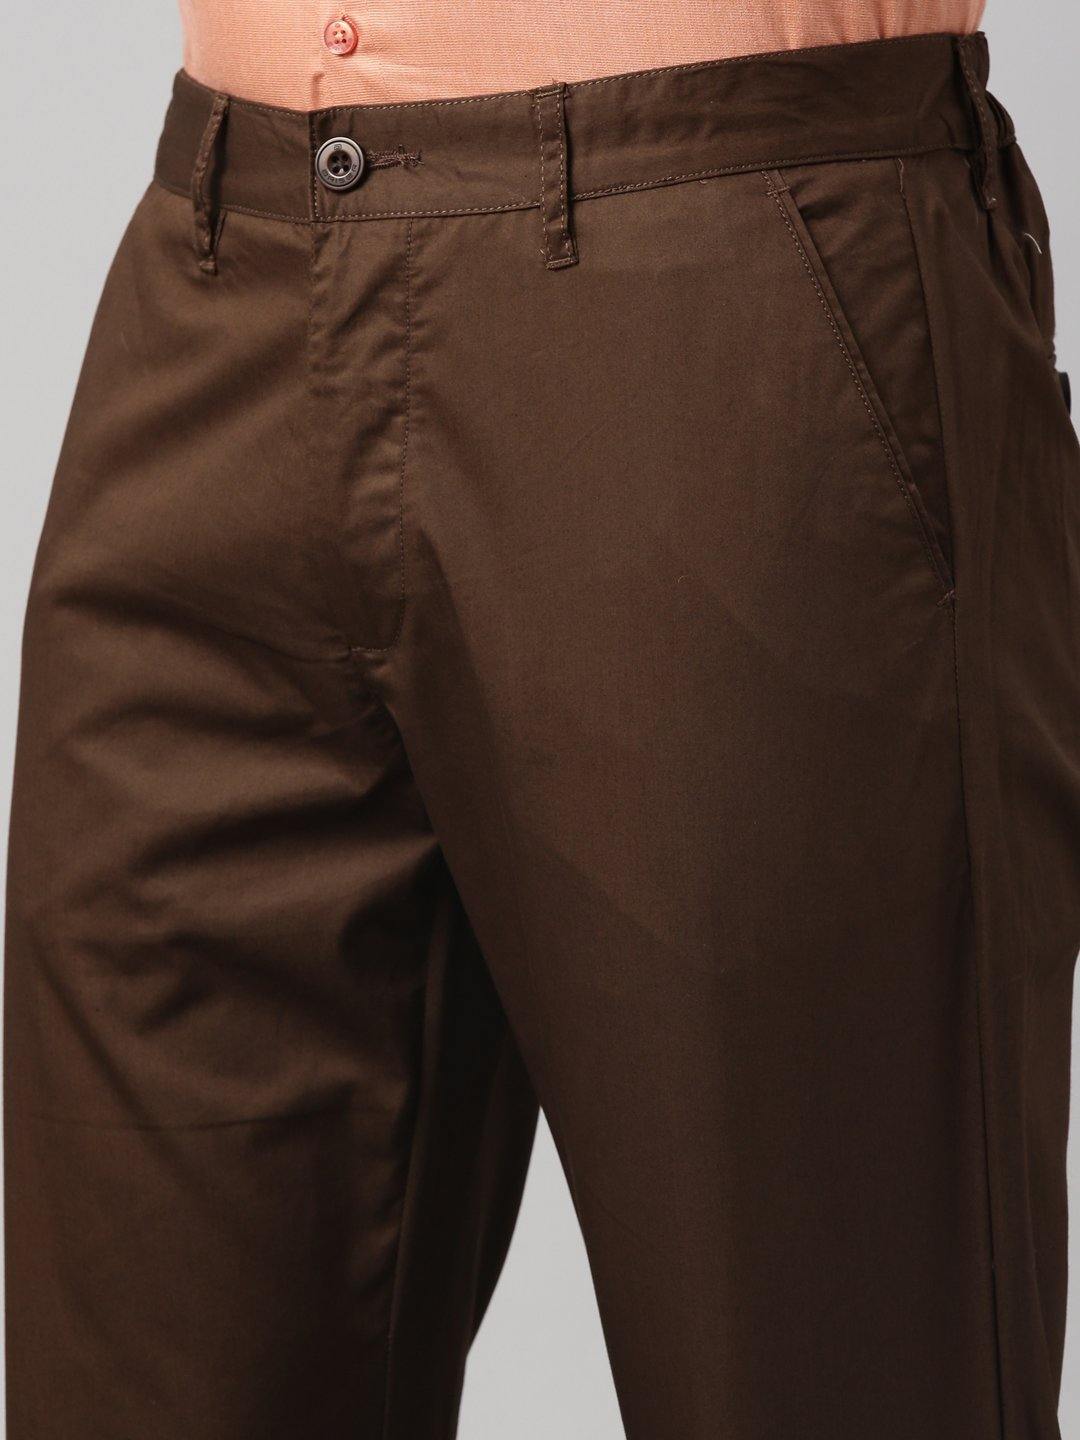 Buy Coffee Brown Regular Fit Formal Trousers online  Looksgudin